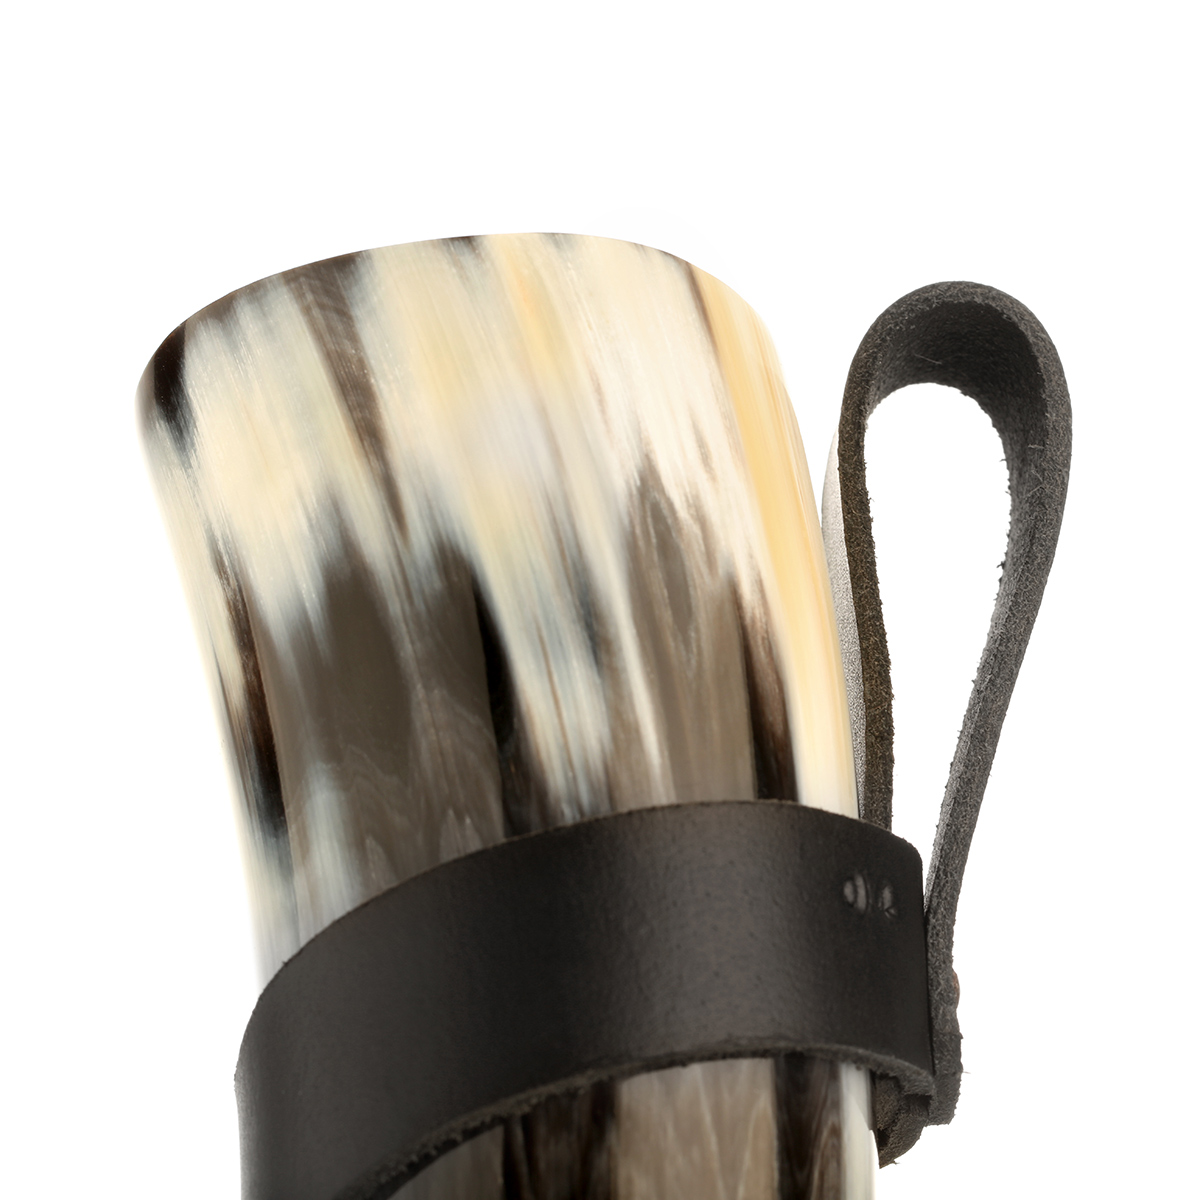 Wikinger Trinkhorn Set mit Lederhalter - 0,5 Liter - echtes Horn